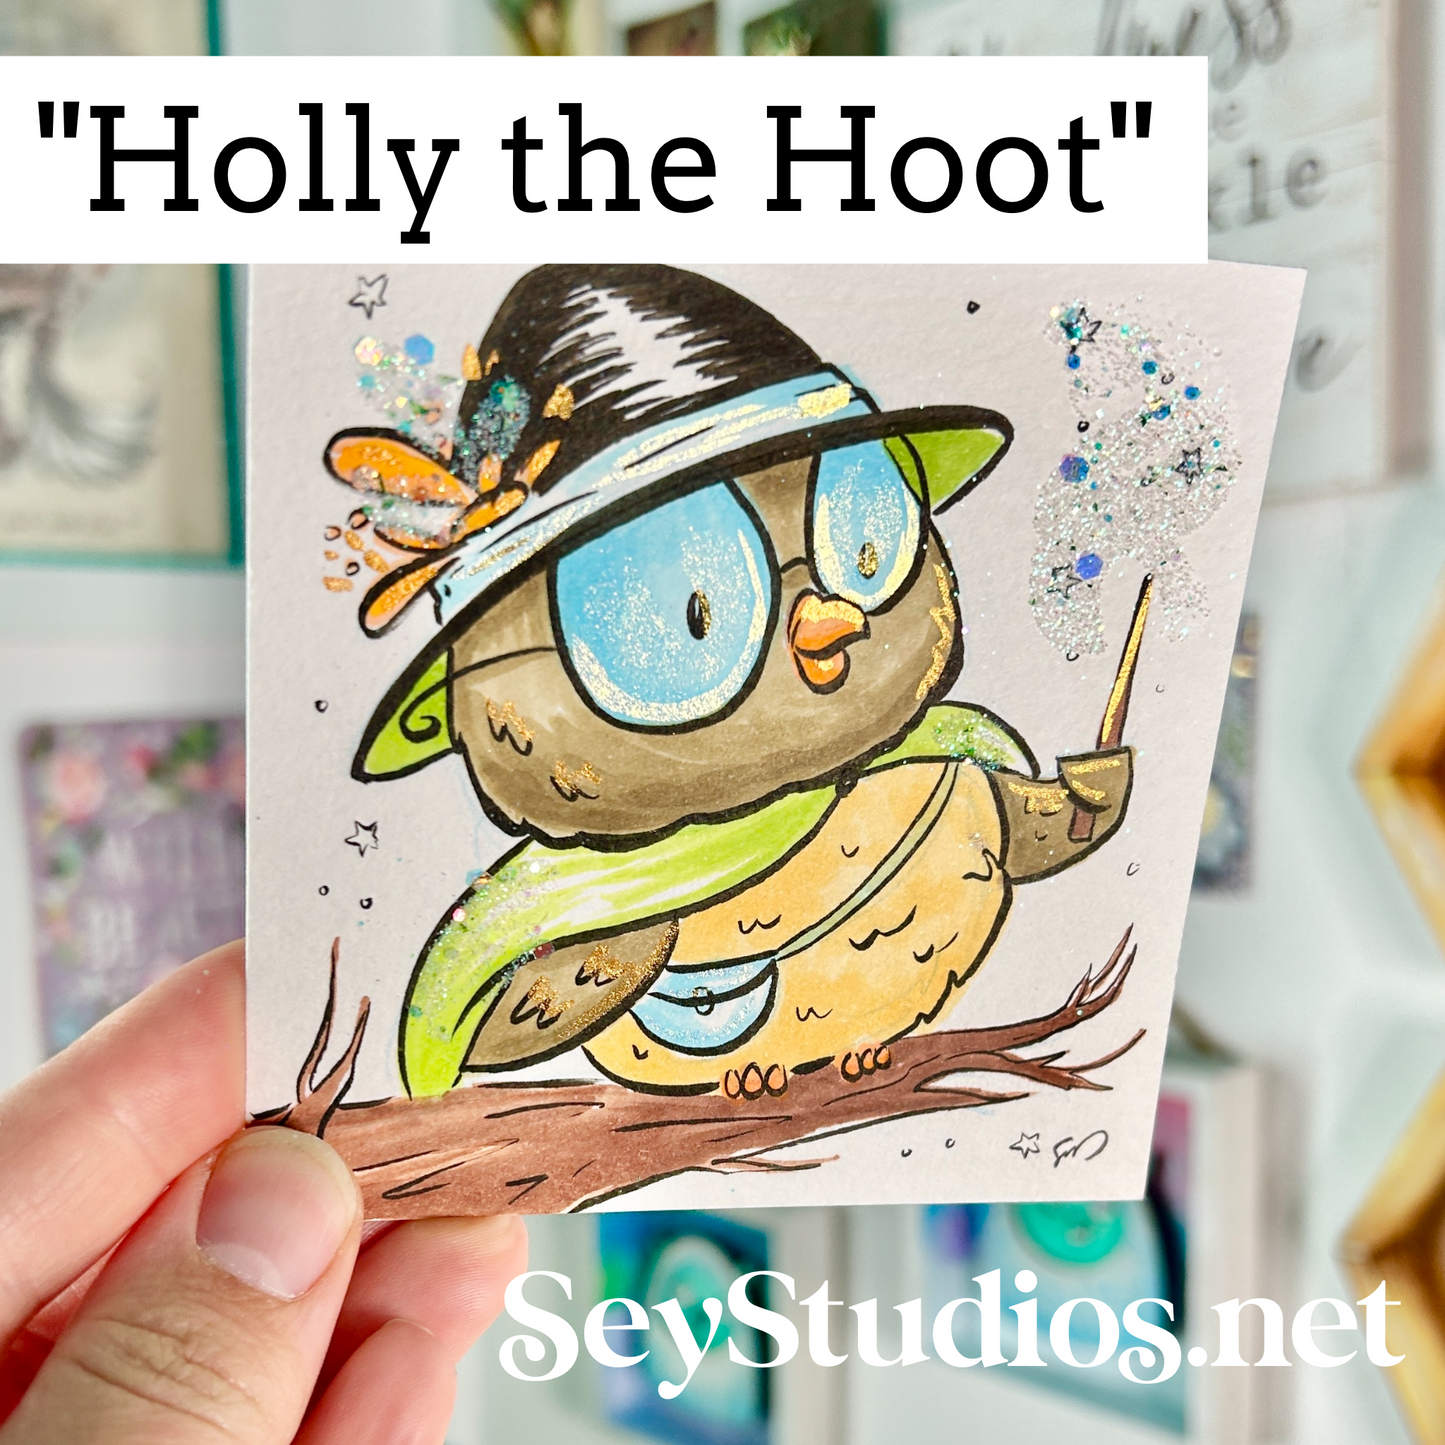 Original - “Holly the Hoot” Sketch